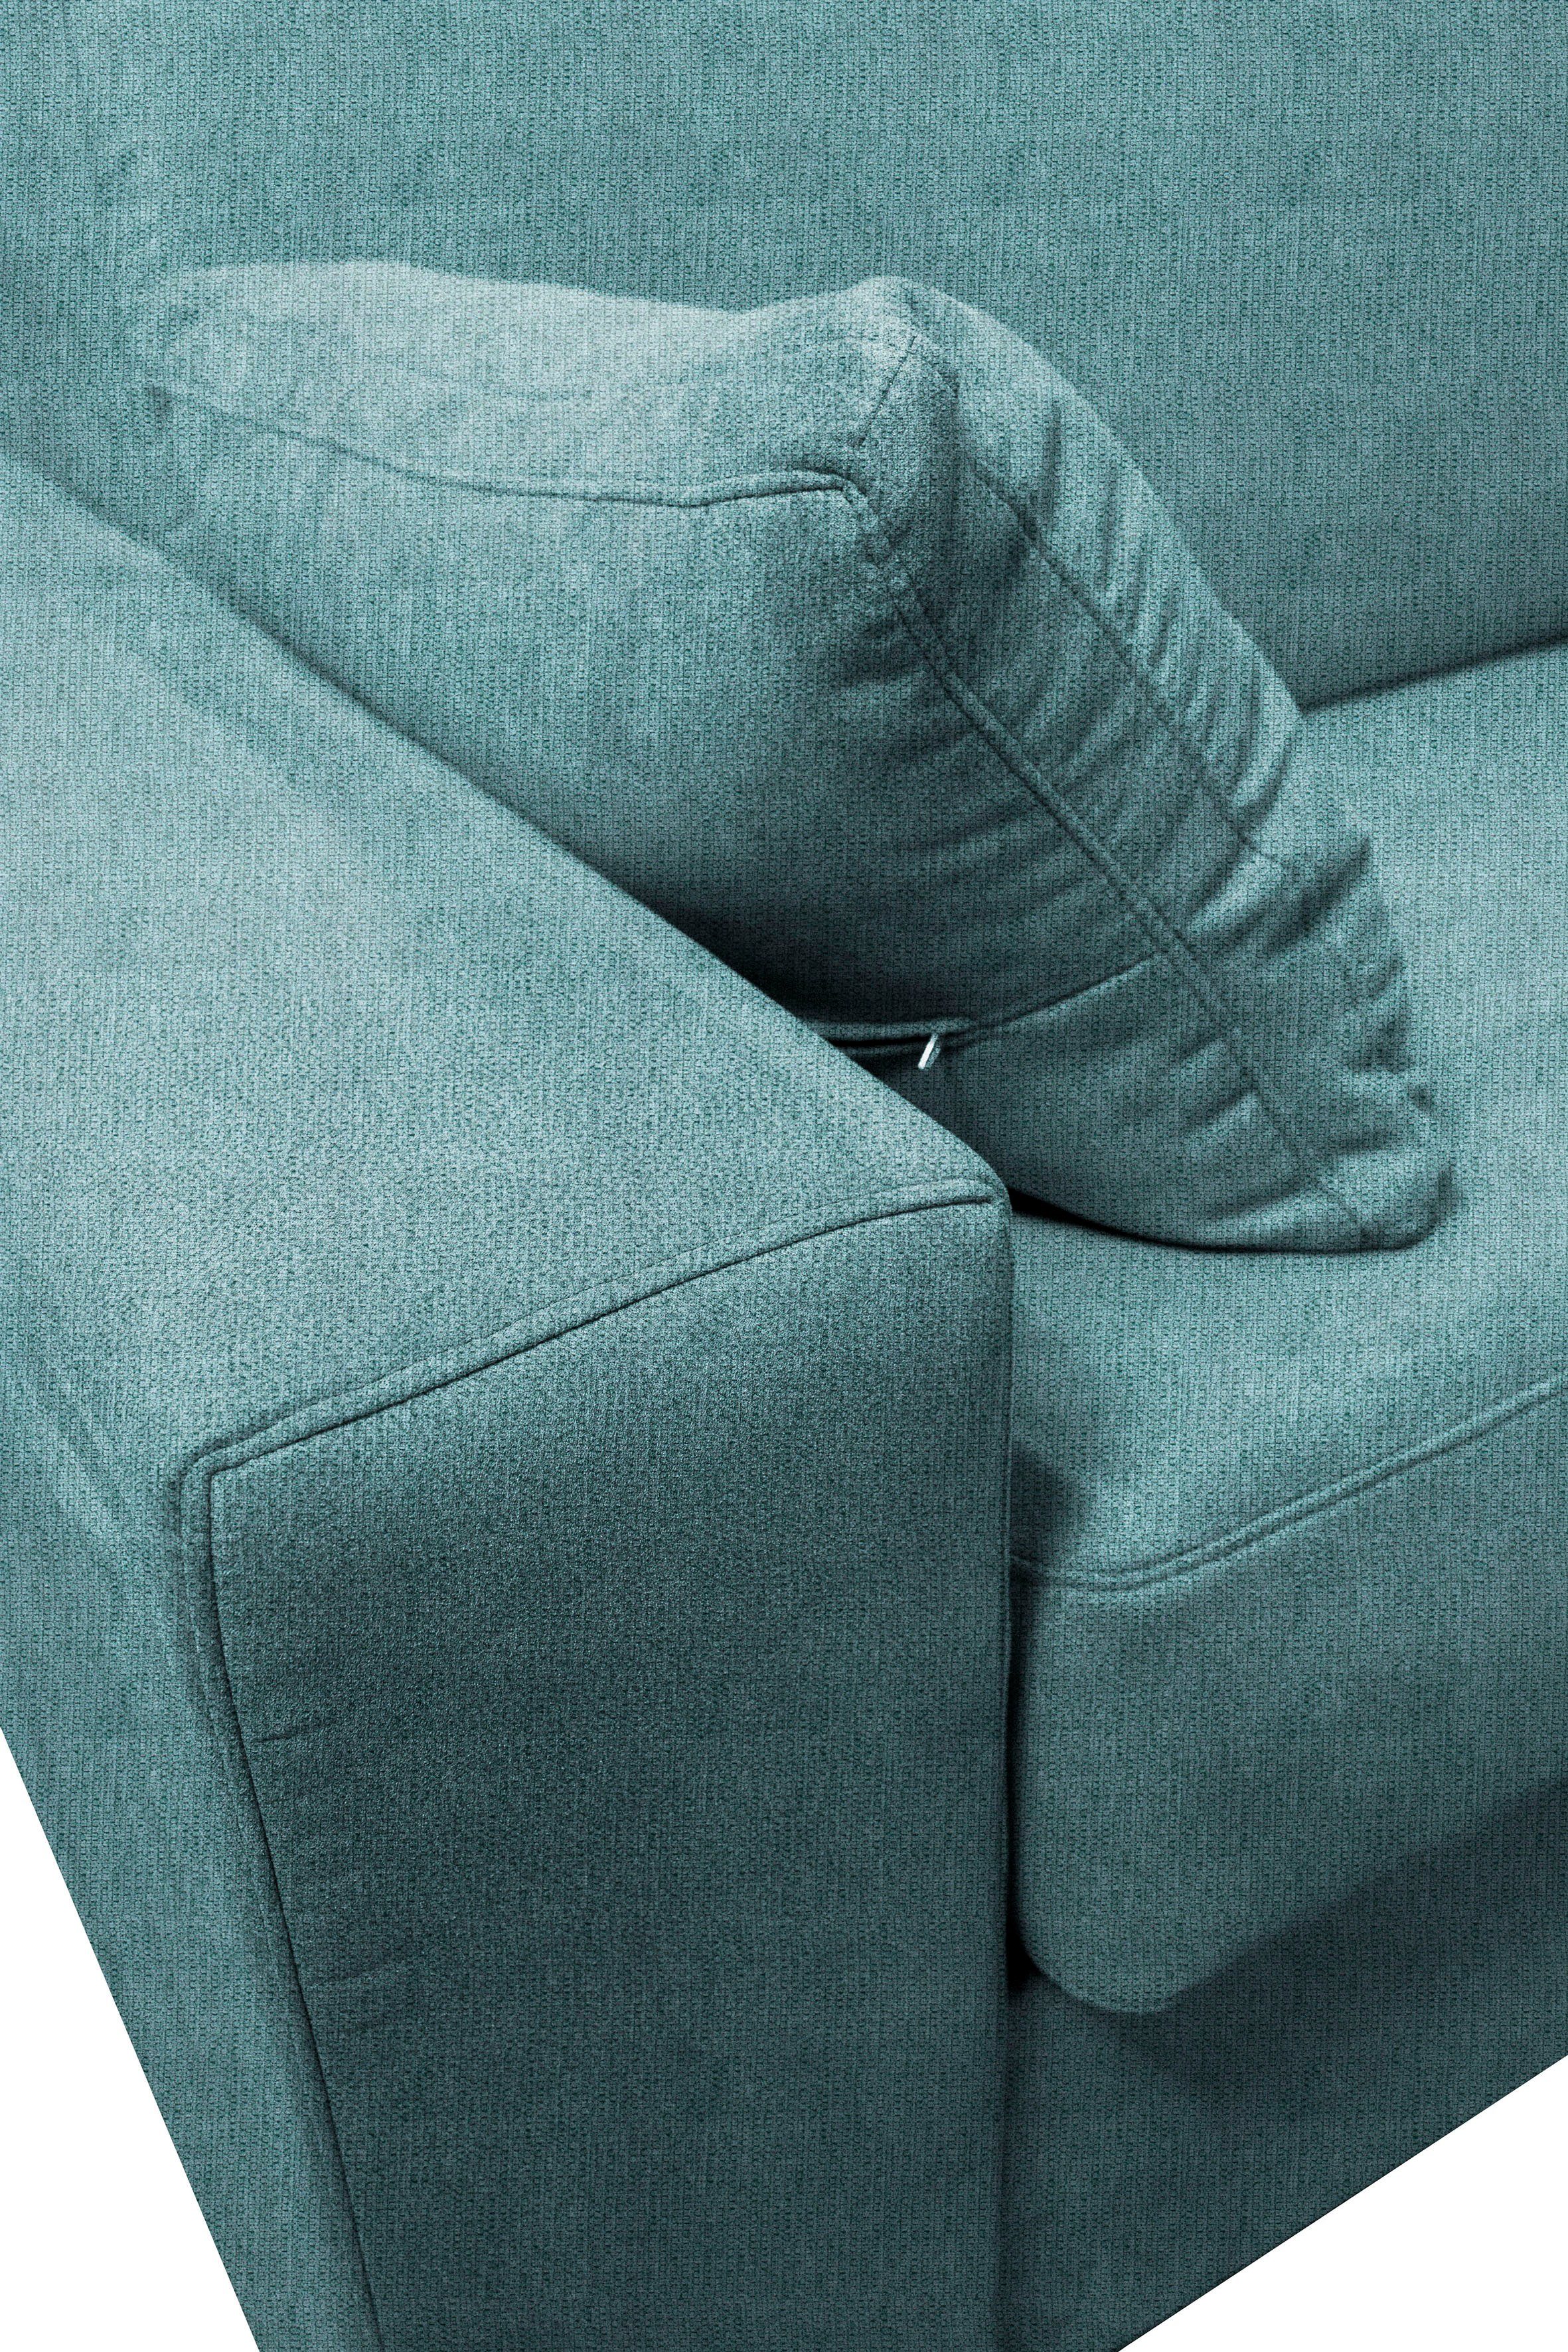 mit Unterfederung, Liegemaße Sessel cm 83x198 affaire Dauerschlaffunktion, ca Roma, Home